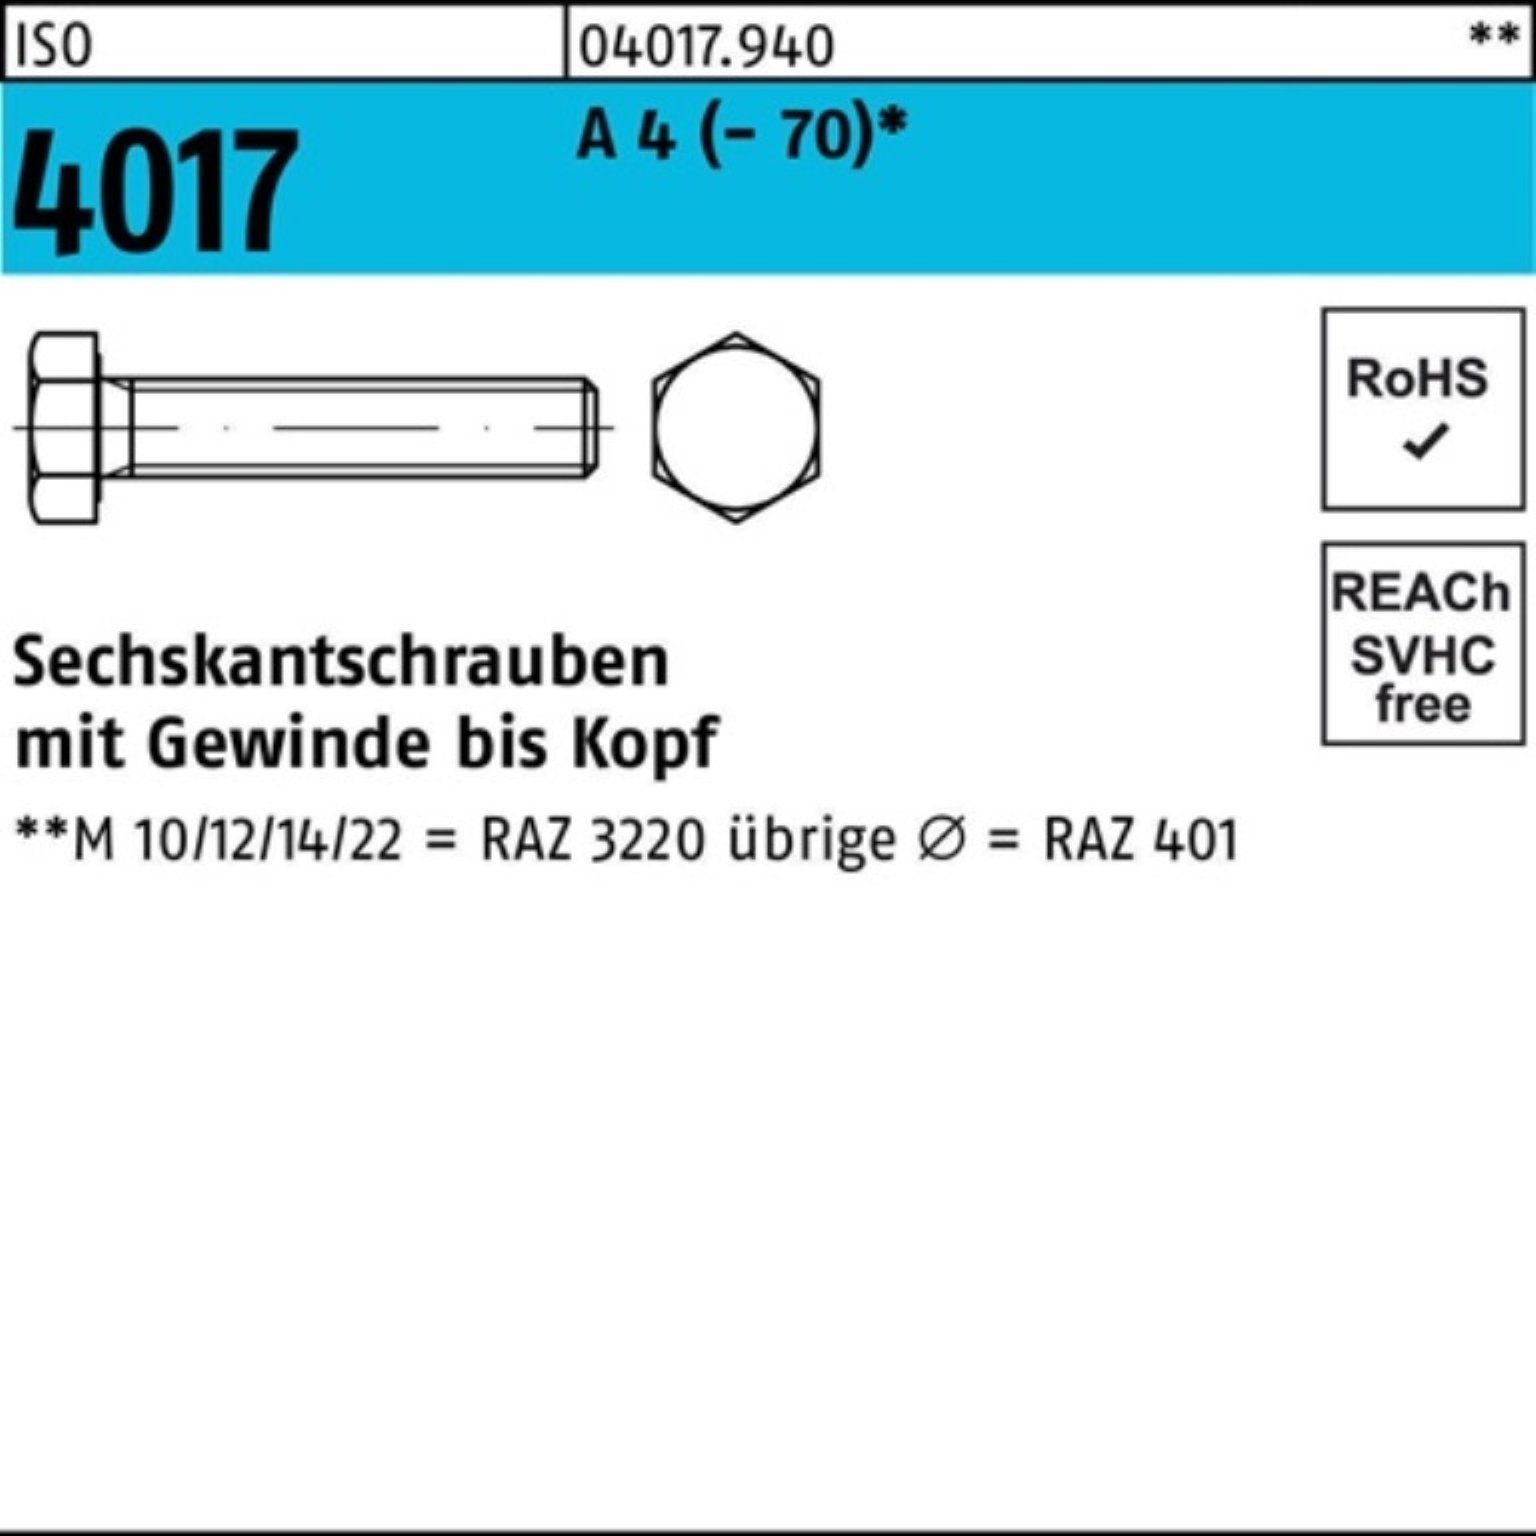 Bufab Sechskantschraube 100er Pack Sechskantschraube ISO 4017 VG M20x 150 A 4 (70) 1 Stück